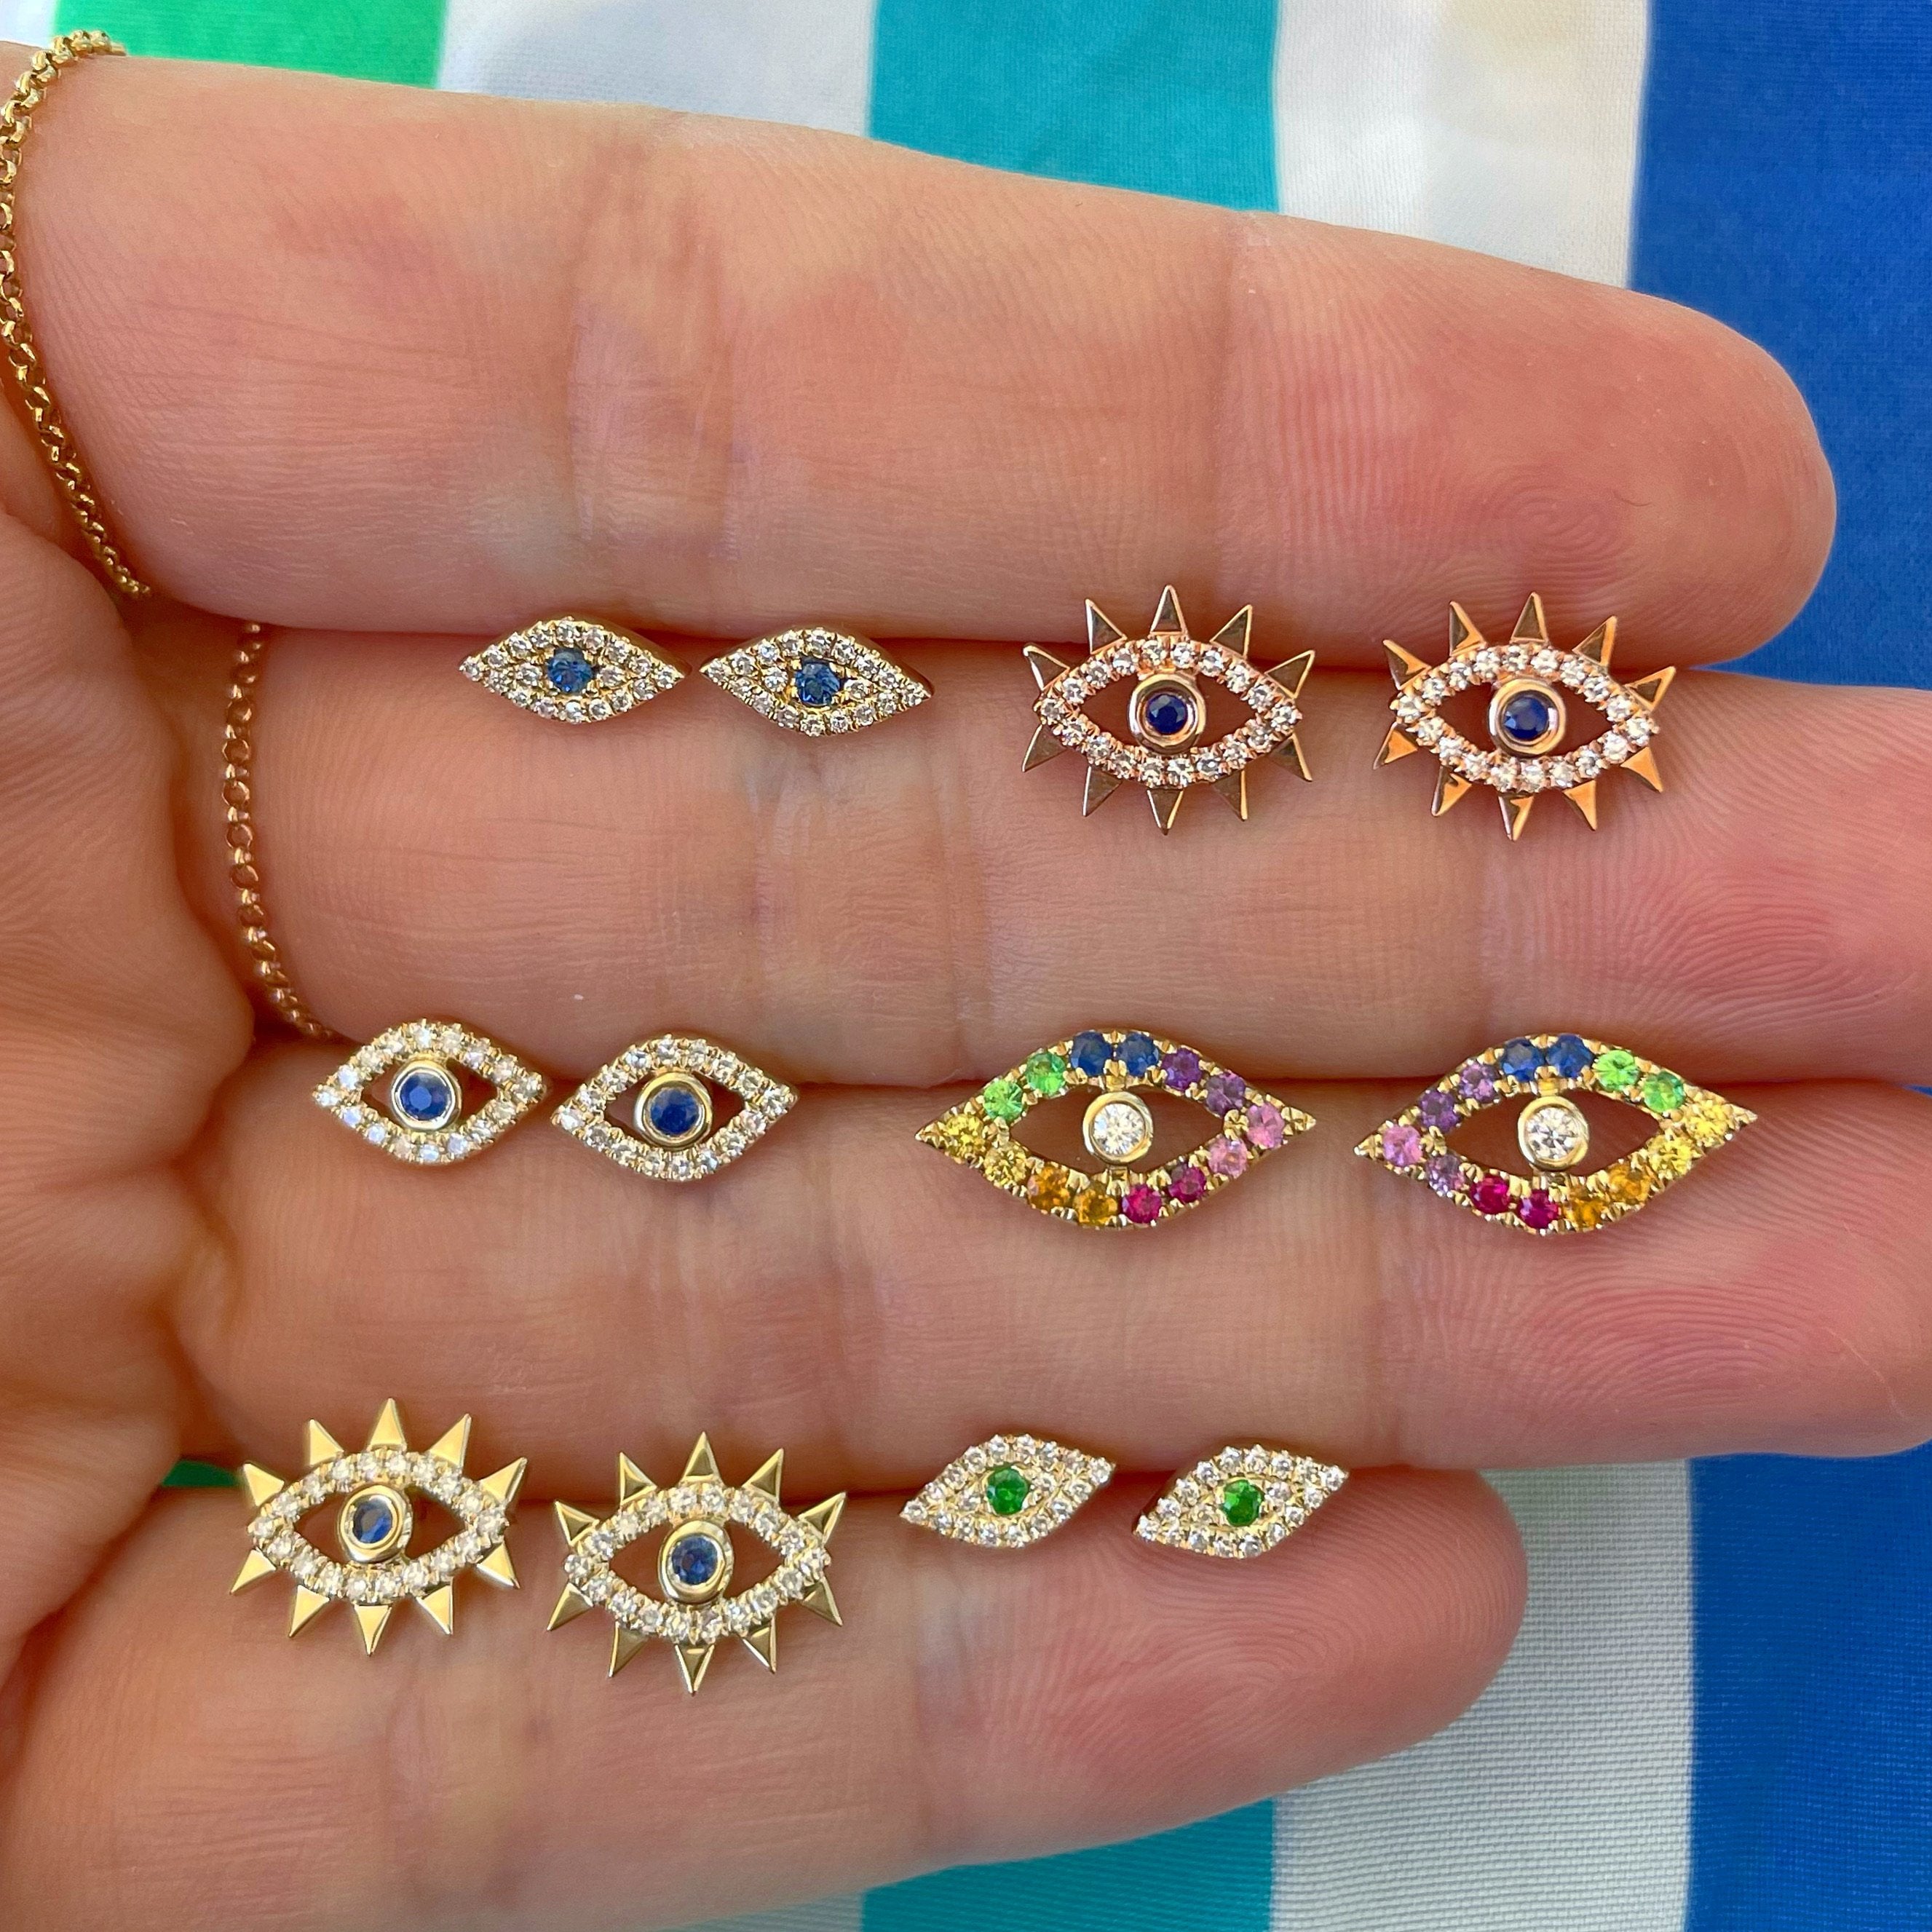 Blue Evil Eyes 14K Gold Diamond Earrings